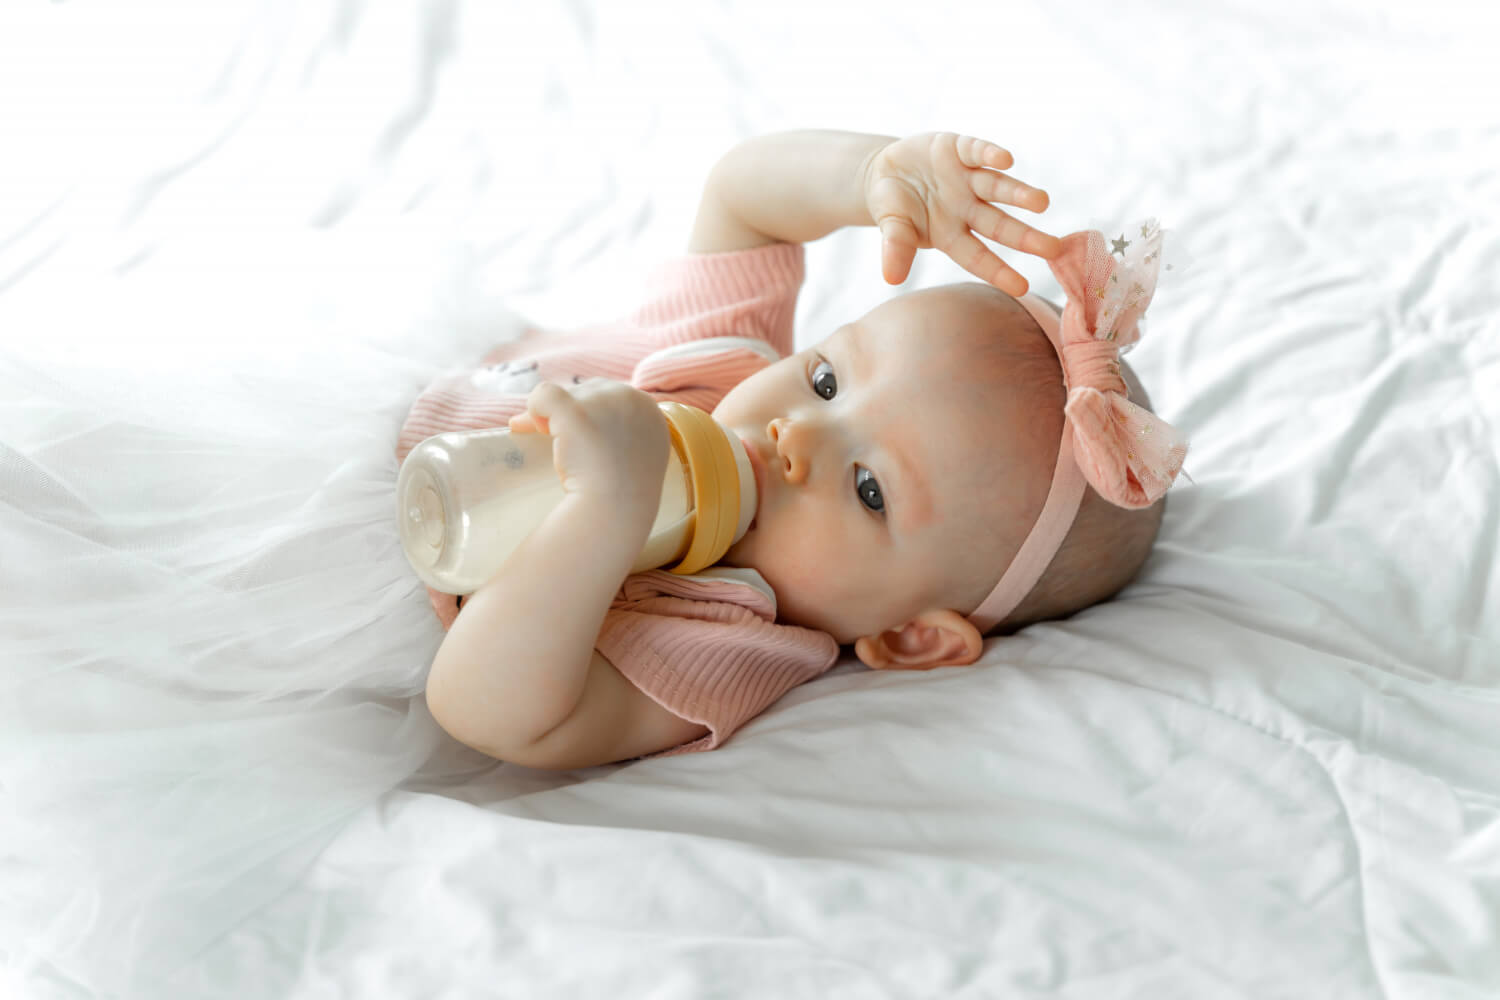 Adorable bébé tenant son biberon - Nutrition infantile optimisée pour la croissance. Découvrez les options de lait infantile adaptées aux besoins de votre tout-petit